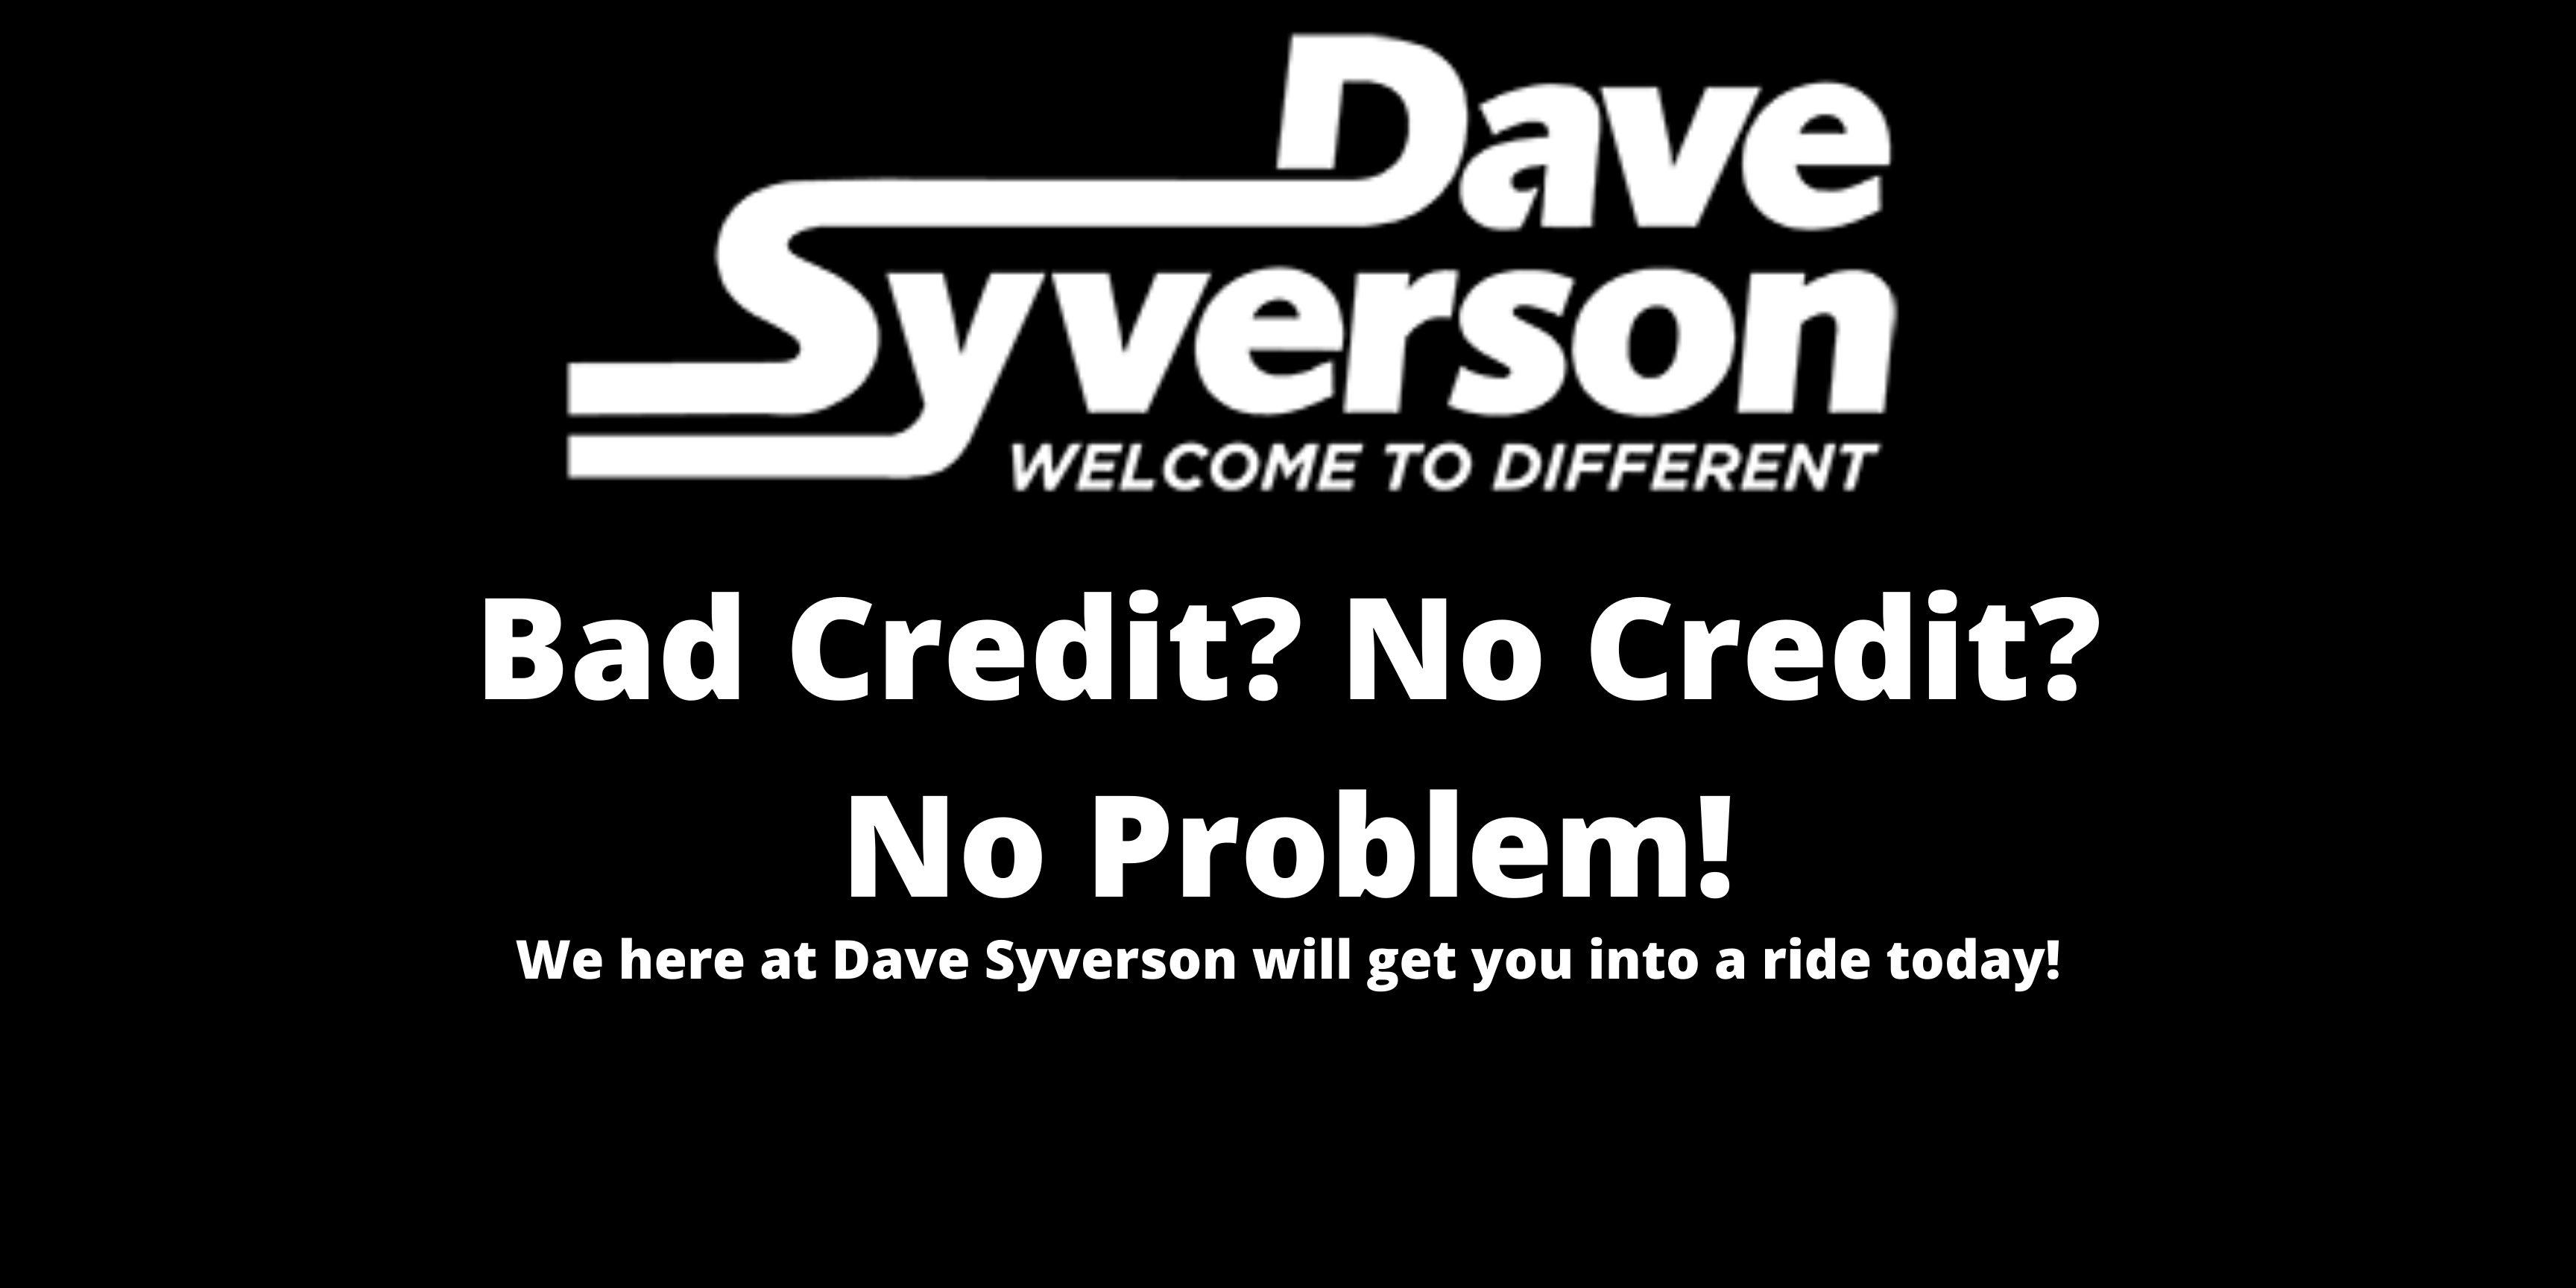 Bad Credit? No Credit? No Problem!